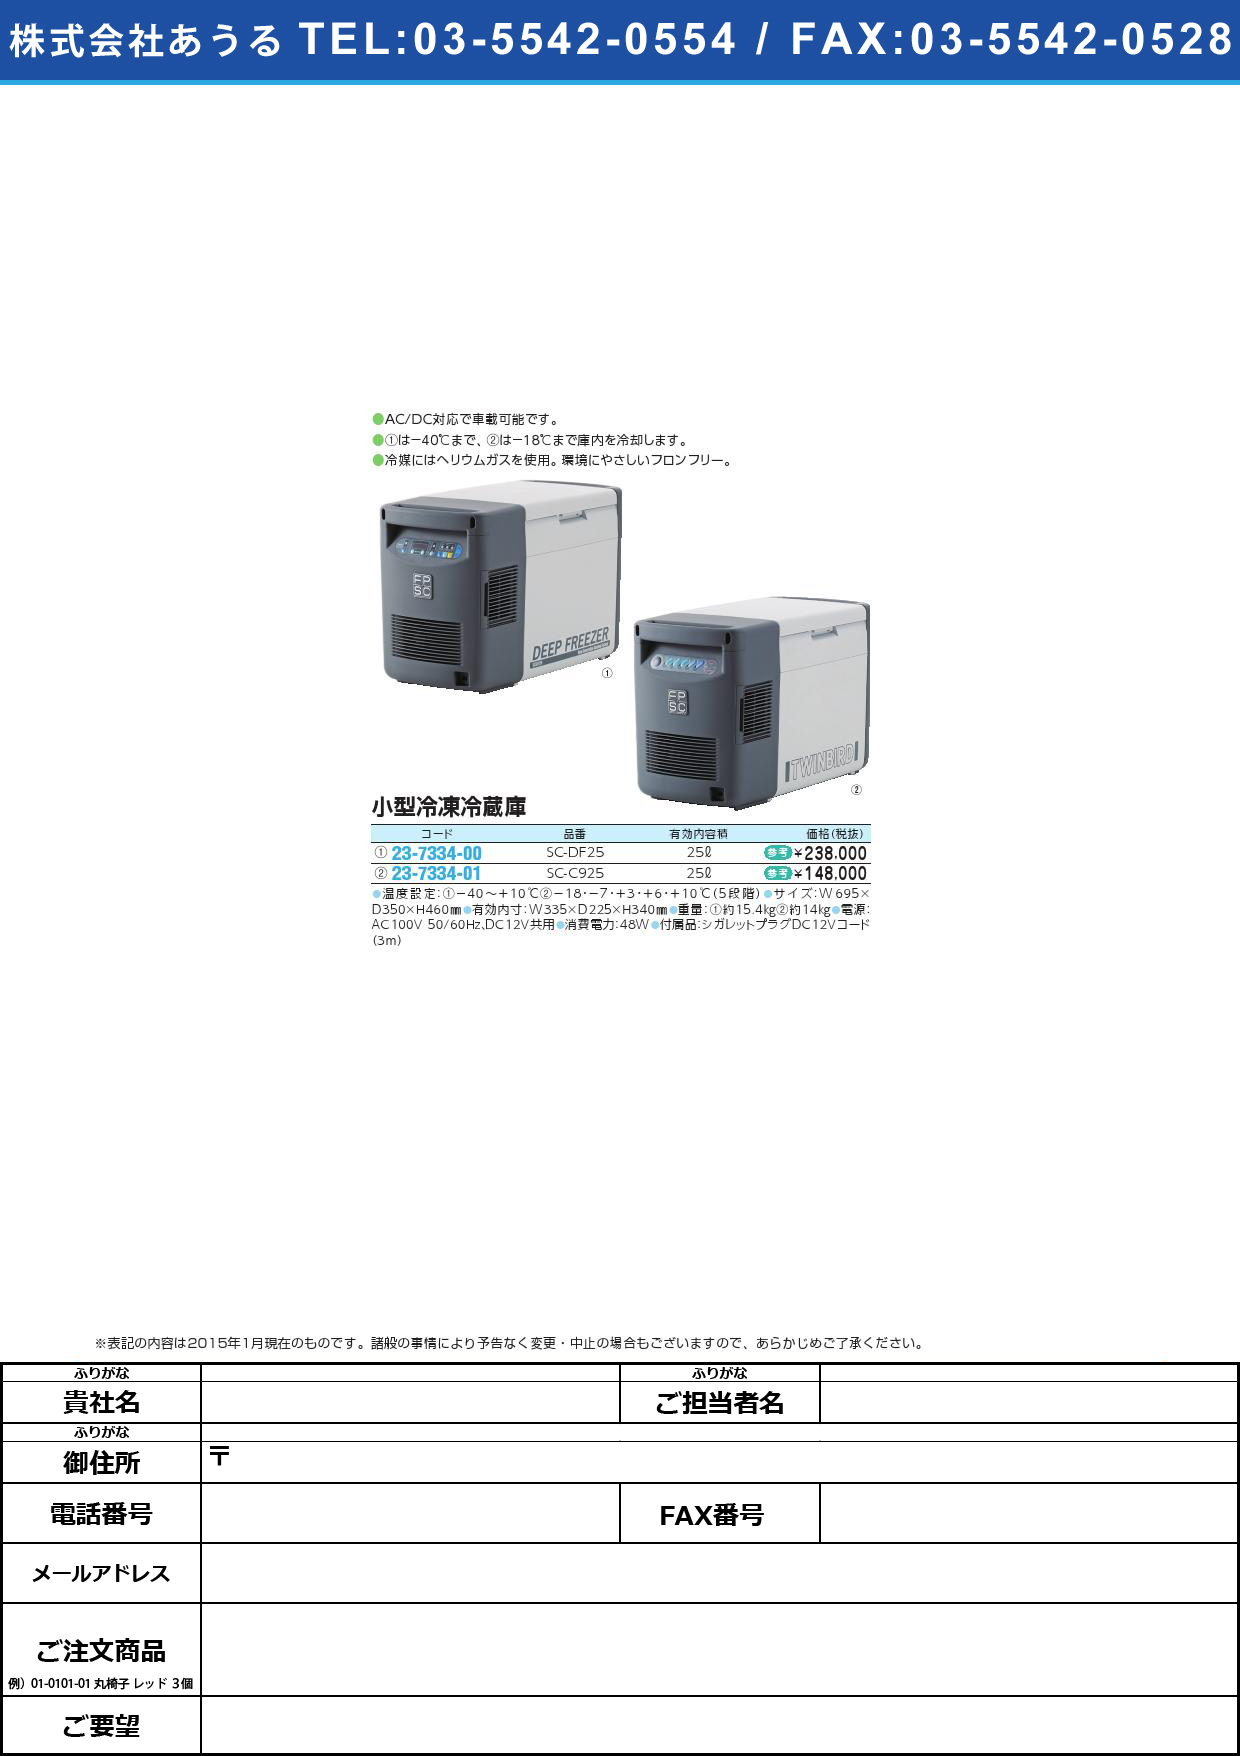 (23-7334-00)小型冷凍冷蔵庫（ディープフリーザー） ｺｶﾞﾀﾚｲﾄｳﾚｲｿﾞｳｺ(23-7334-00)SC-DF25(25L)【1台単位】【2015年カタログ商品】